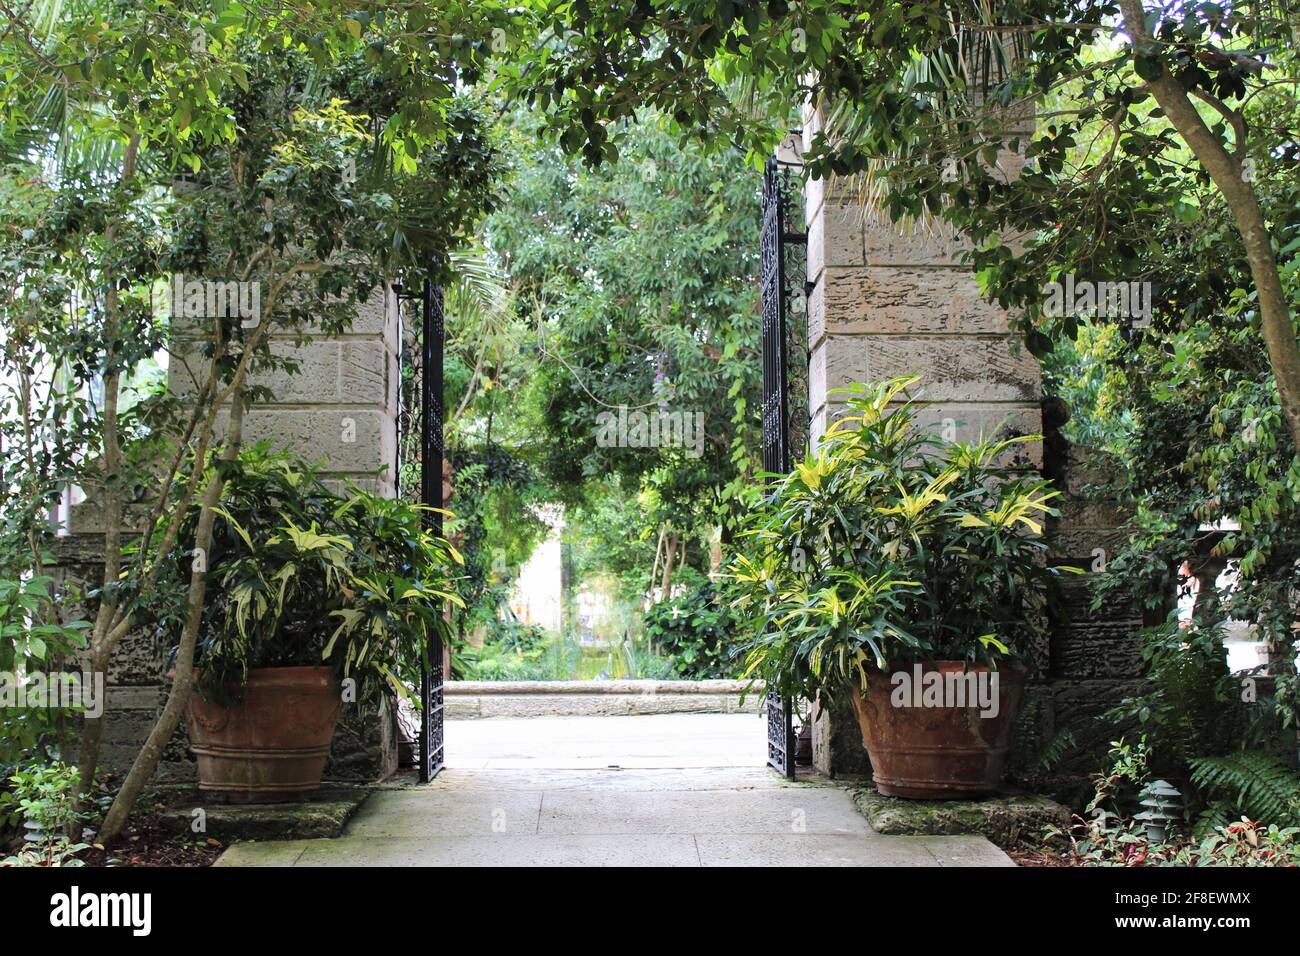 Beautiful European Italian outdoor entryway to a garden or a house Stock Photo